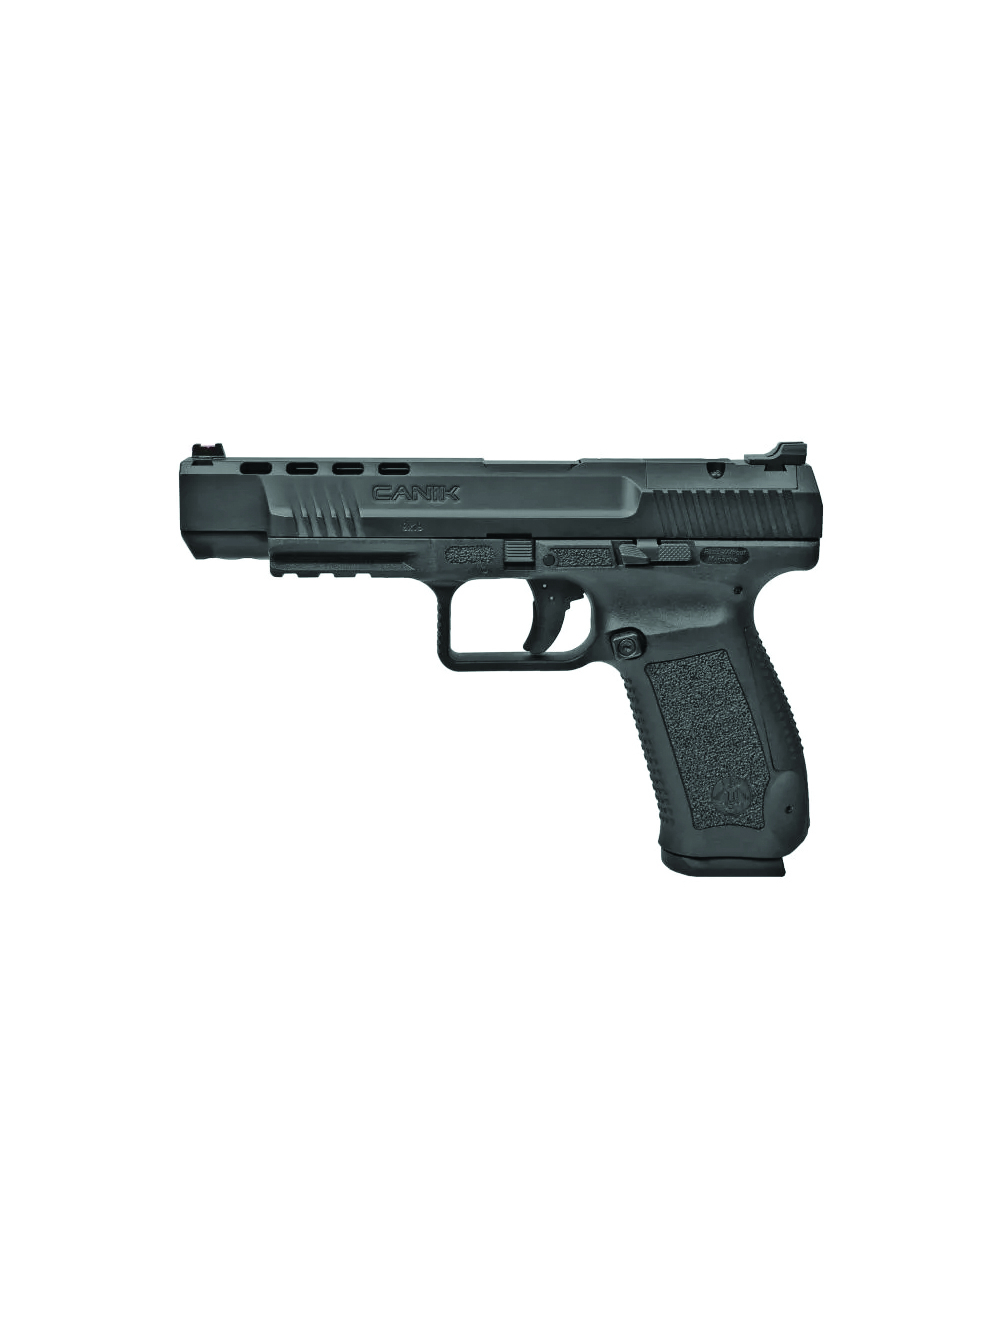 Canik TP9SFX Blackout 9mm Handgun 20+1 5.2